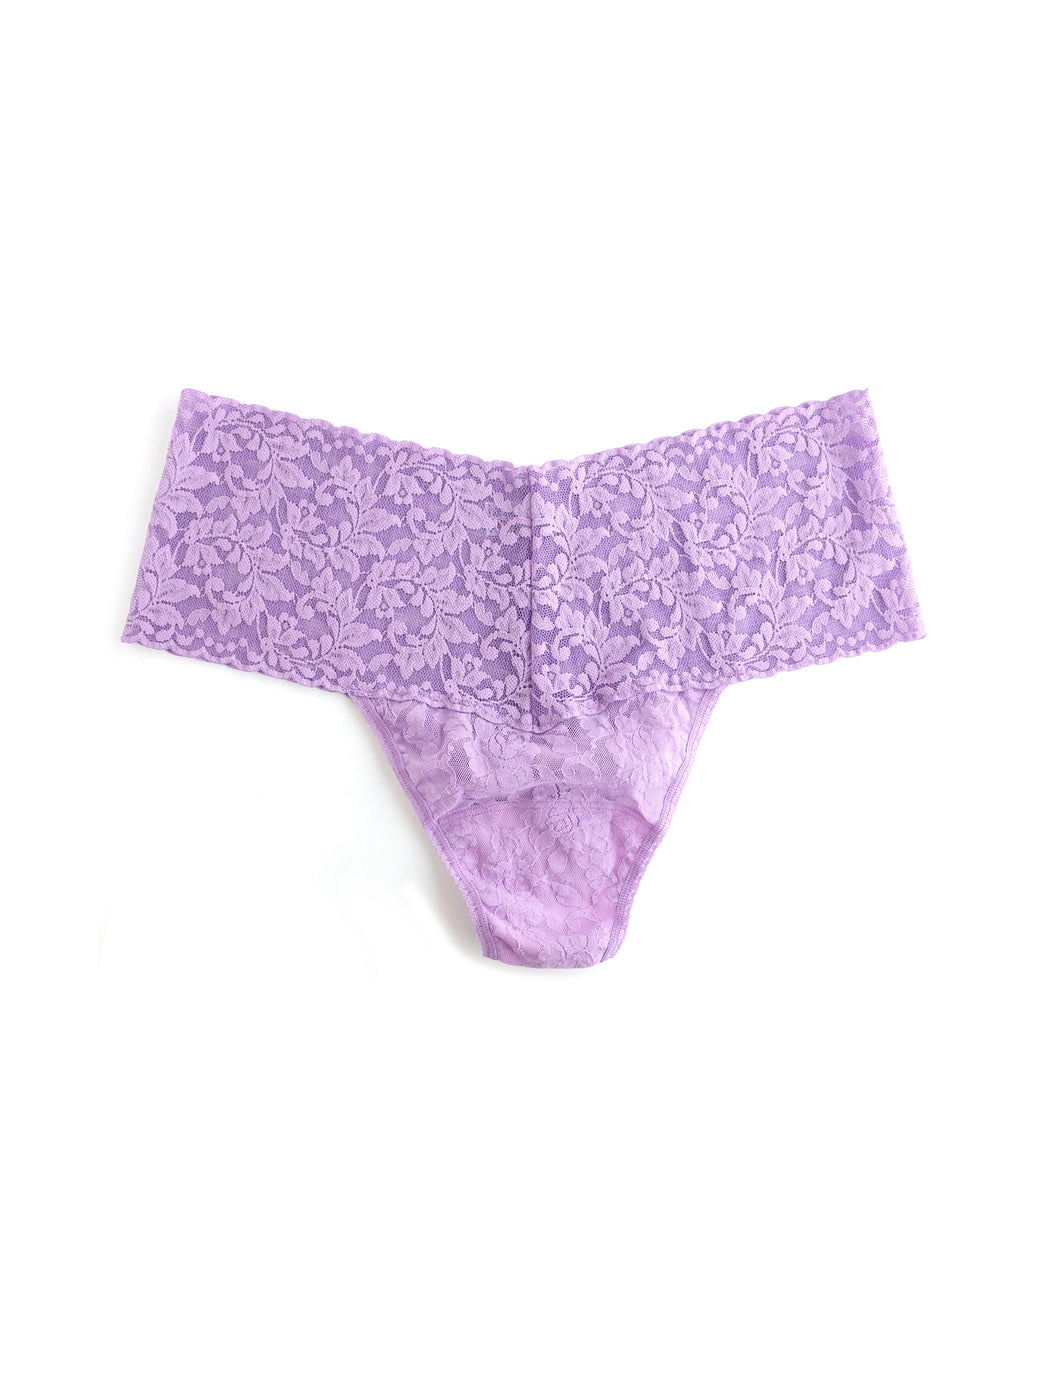 Plus Size Retro Lace Thong Lavender Sachet Purple